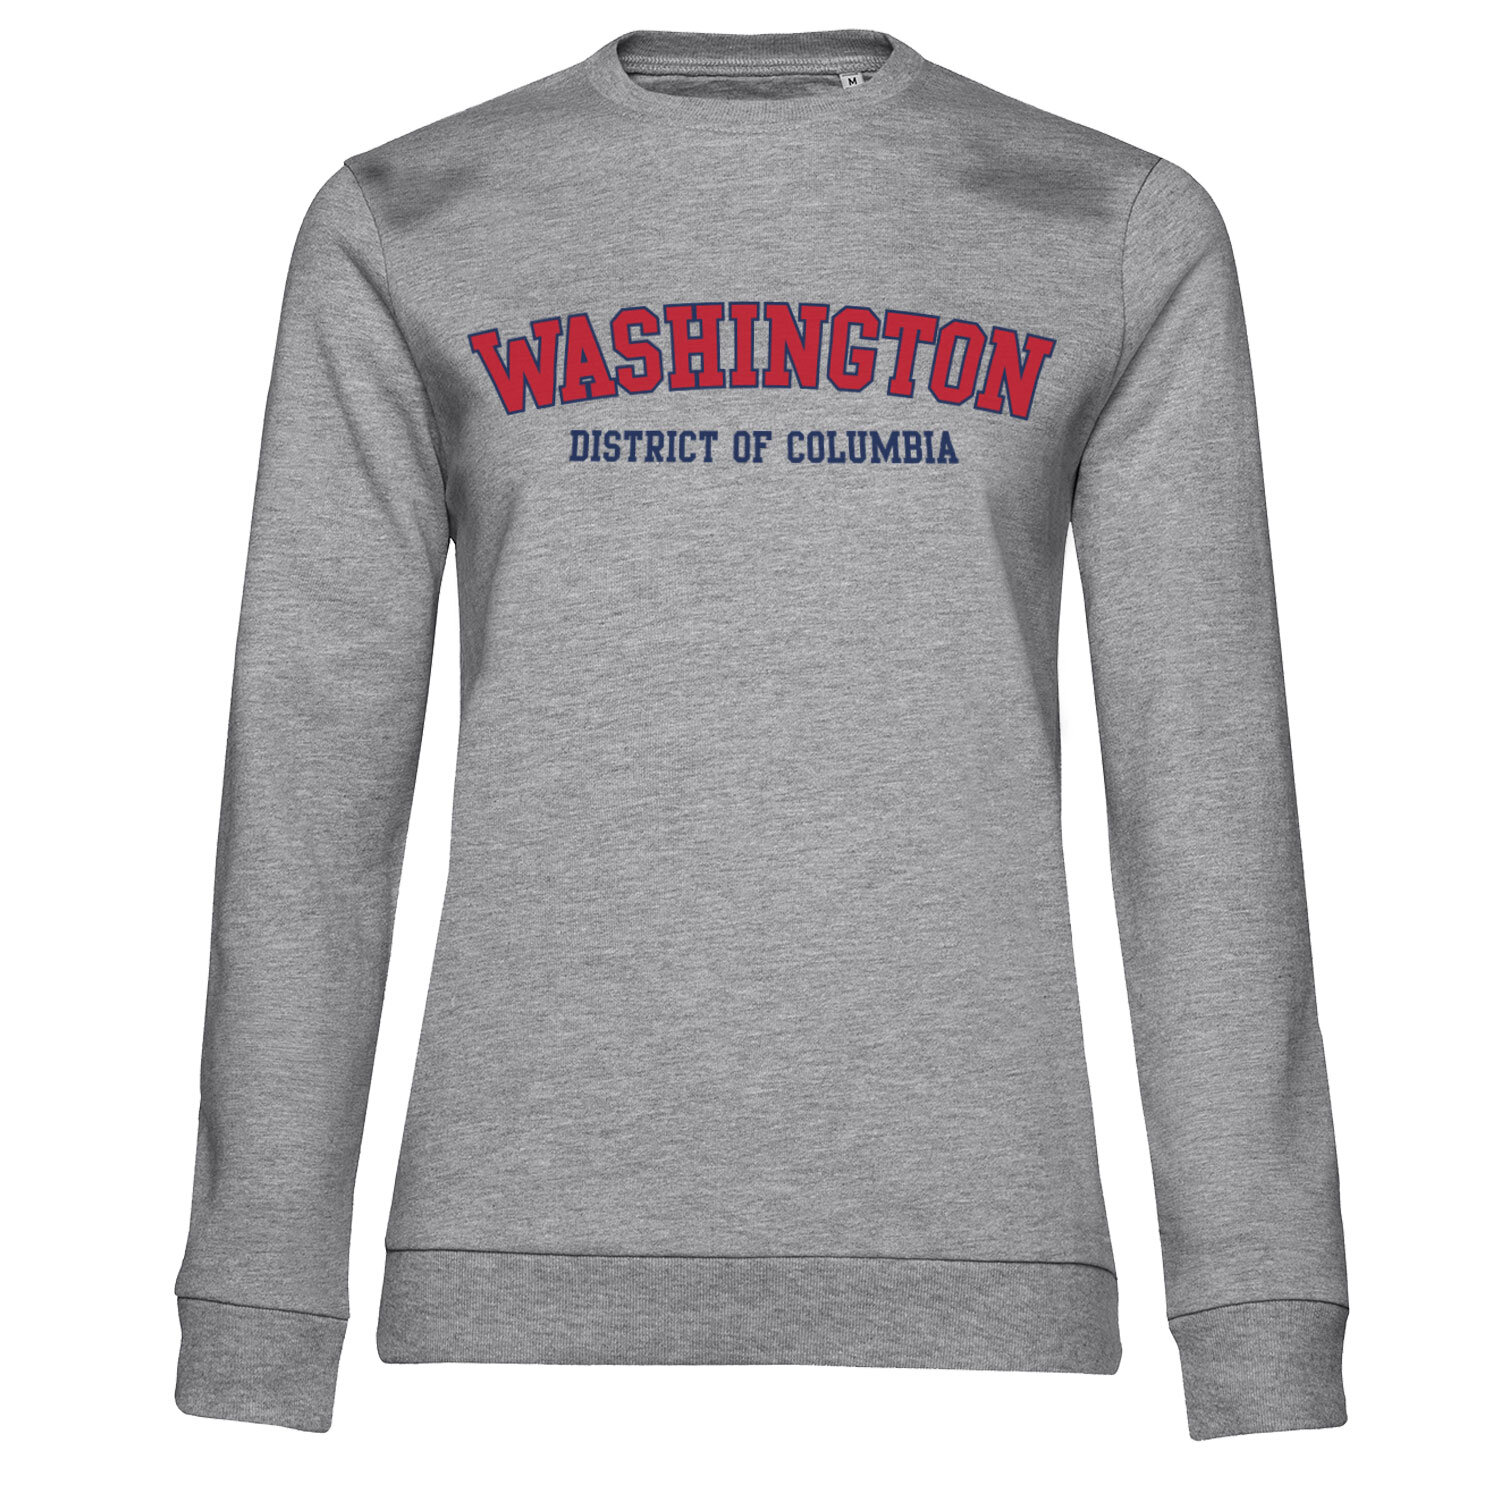 Washington - District Of Columbia Girly Sweatshirt